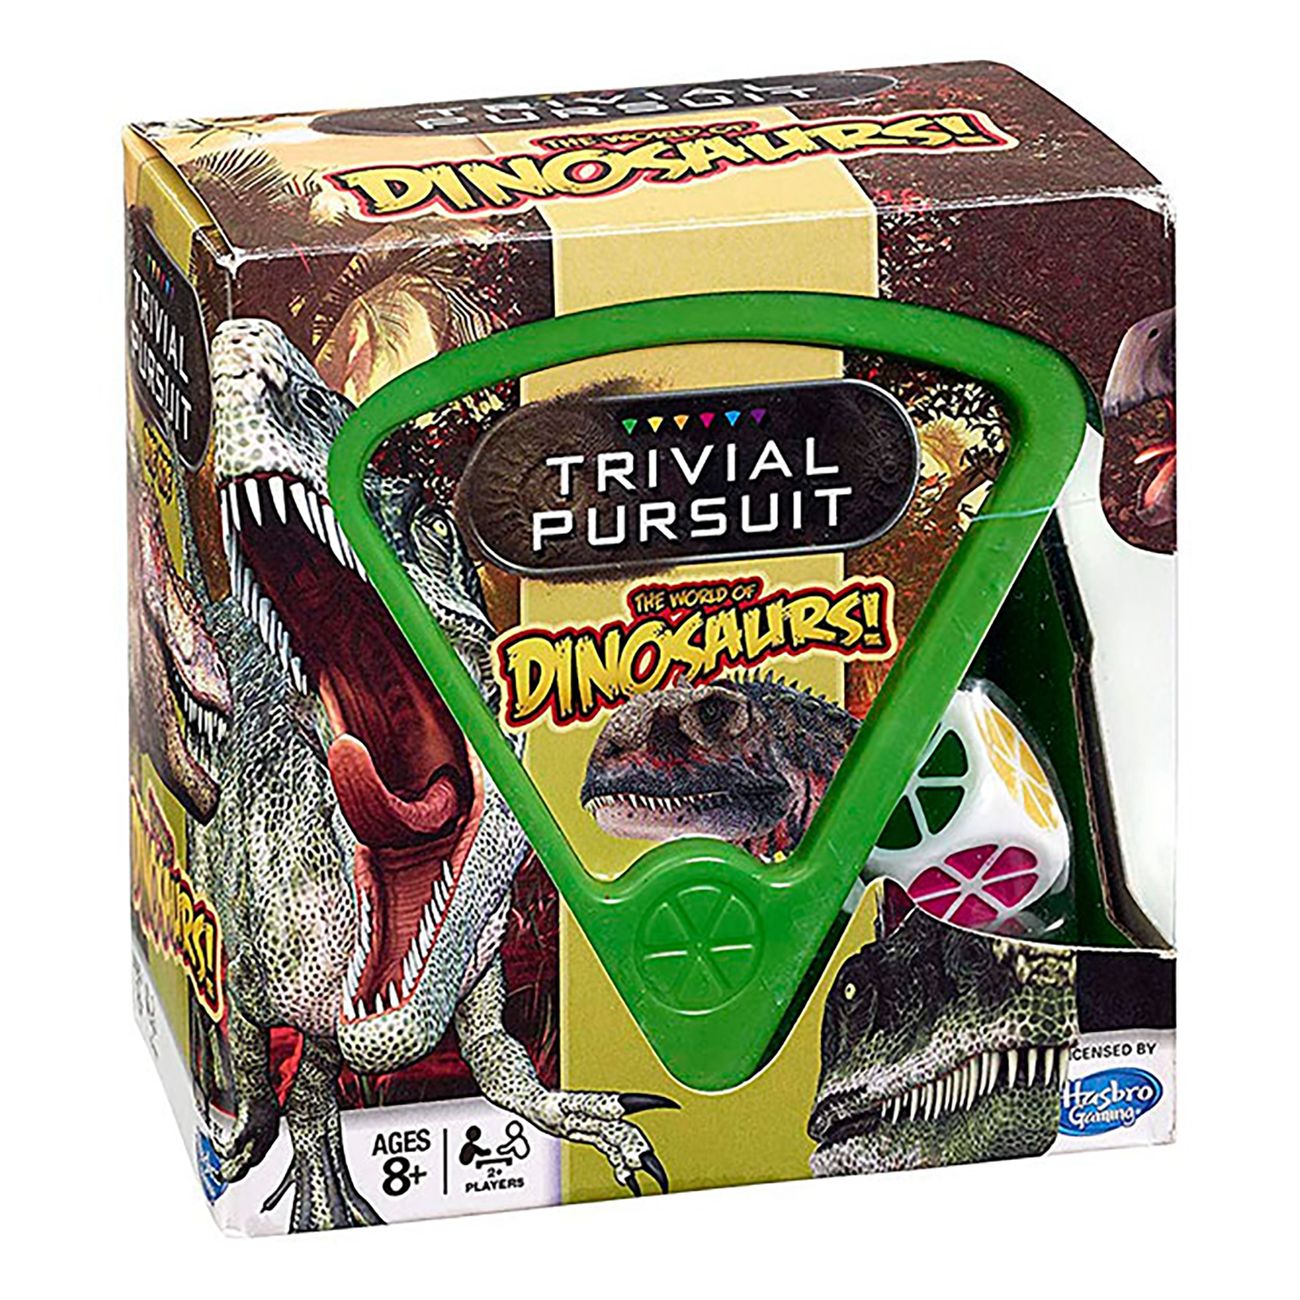 trivial-pursuit-dinosaurs-en-87969-1